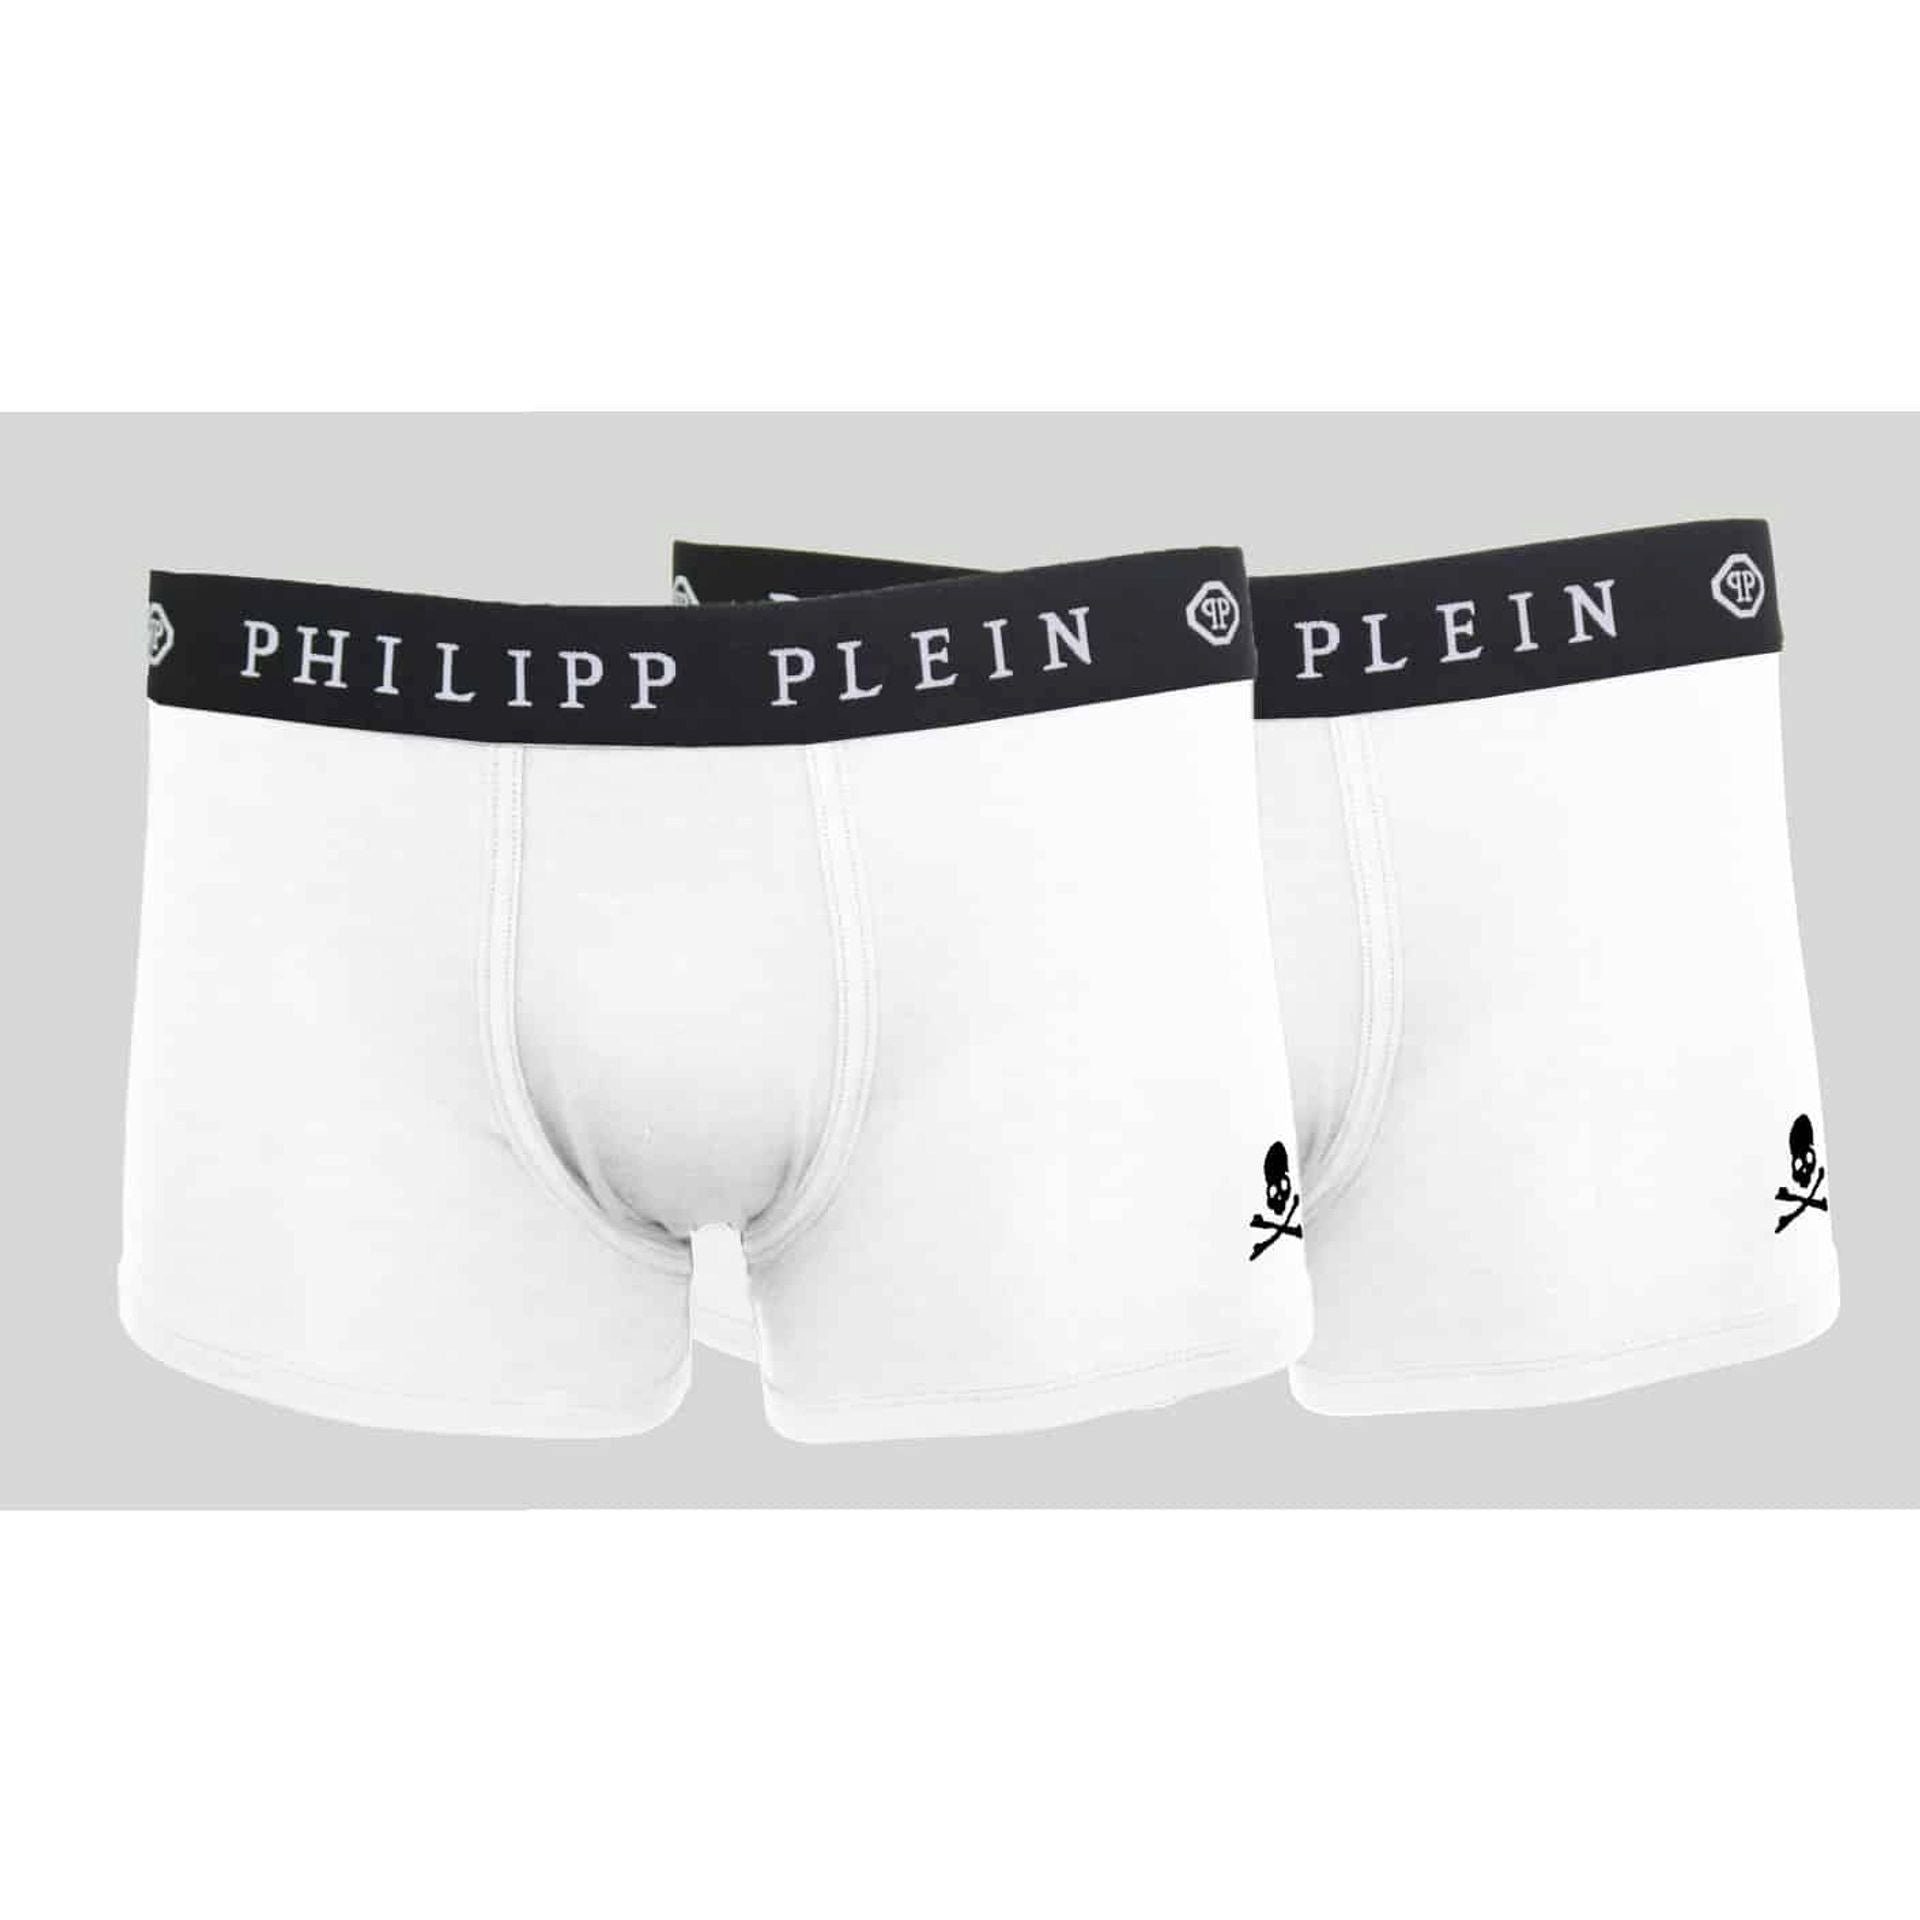 PHILIPP PLEIN Boxershorts, 2er-Pack, Weiß (Packung, 2er-Pack)